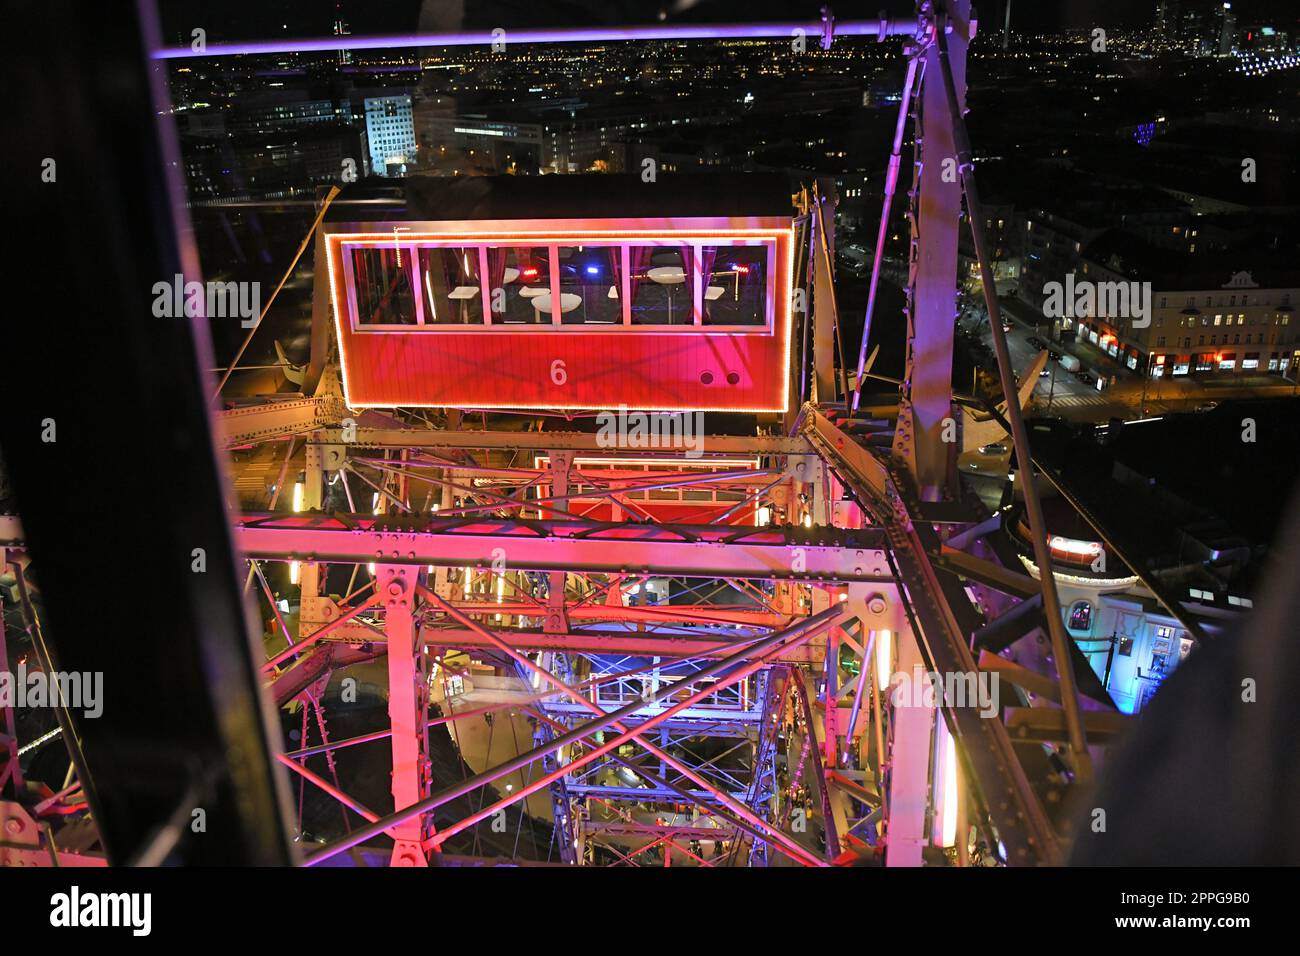 Riesenrad am Abend im groÃŸen VergnÃ¼gungspark 'Prater' in Wien, Ã–sterreich, Europa - Ferris wheel in the evening in the large amusement park 'Prater' in Vienna, Austria, Europe. Stock Photo